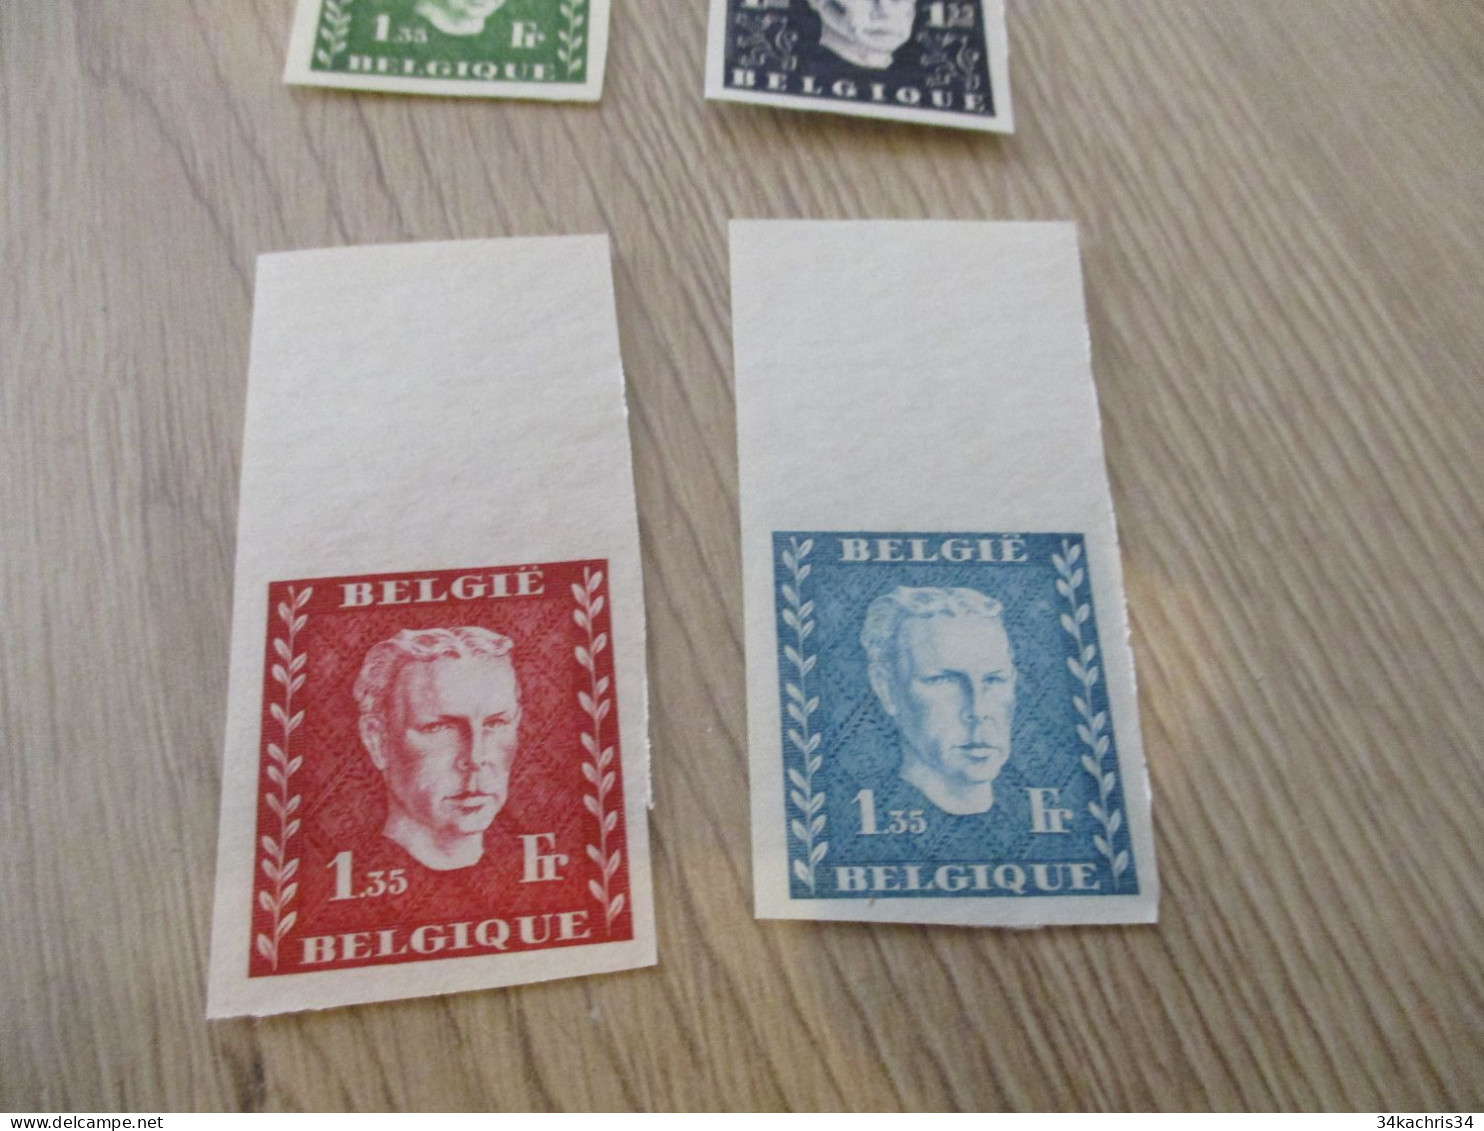 Essai - Prince Charles (1947) Belgique Belgie   4 Non Dentelés Sans Gomme Rare!!! - Ensayos & Reimpresiones